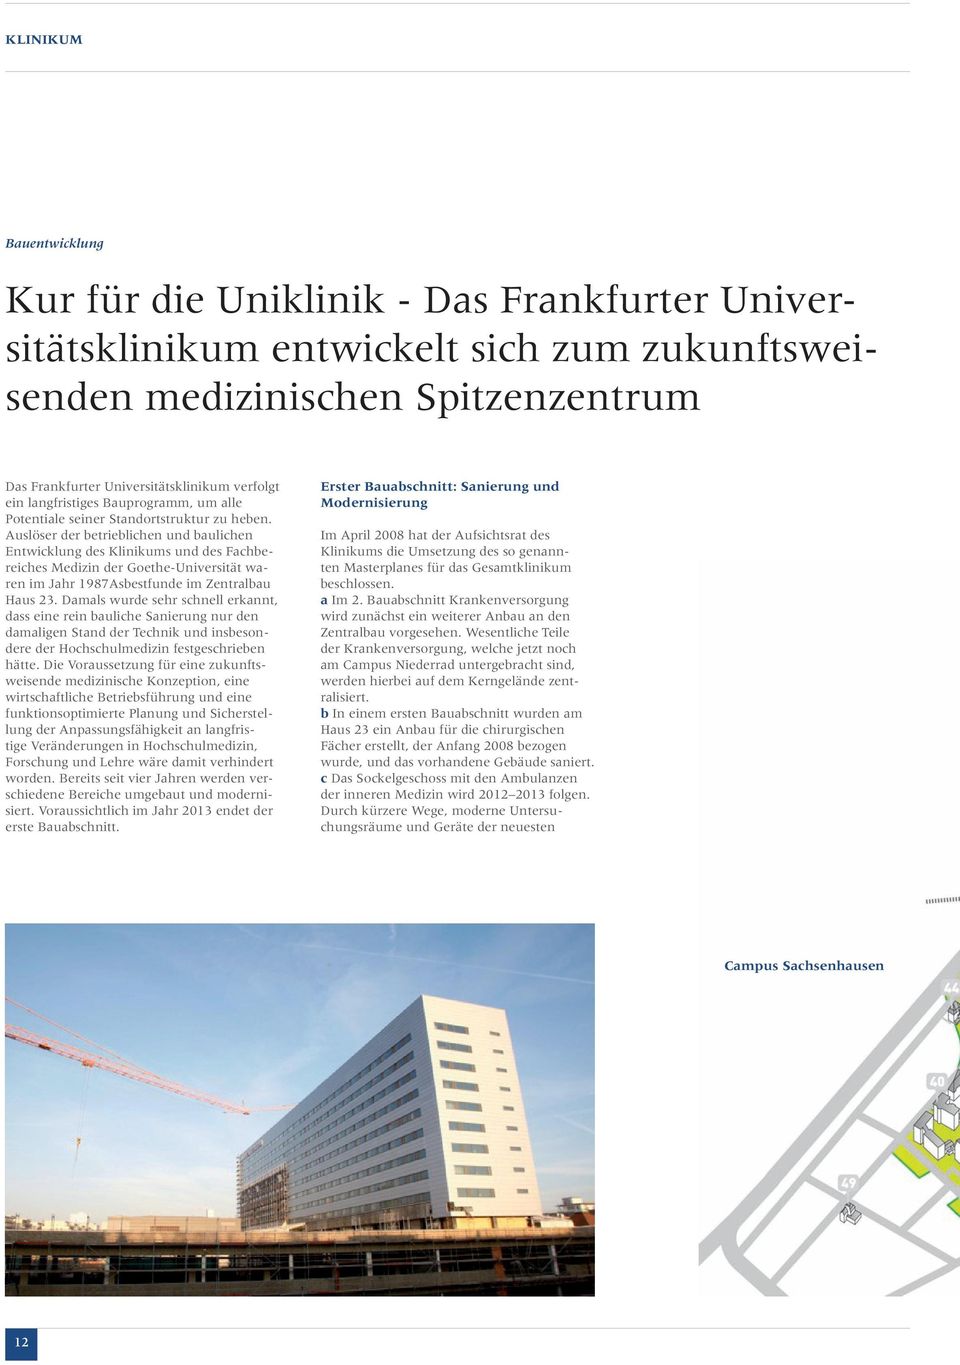 Auslöser der betrieblichen und baulichen Entwicklung des Klinikums und des Fachbereiches Medizin der Goethe-Universität waren im Jahr 1987Asbestfunde im Zentralbau Haus 23.